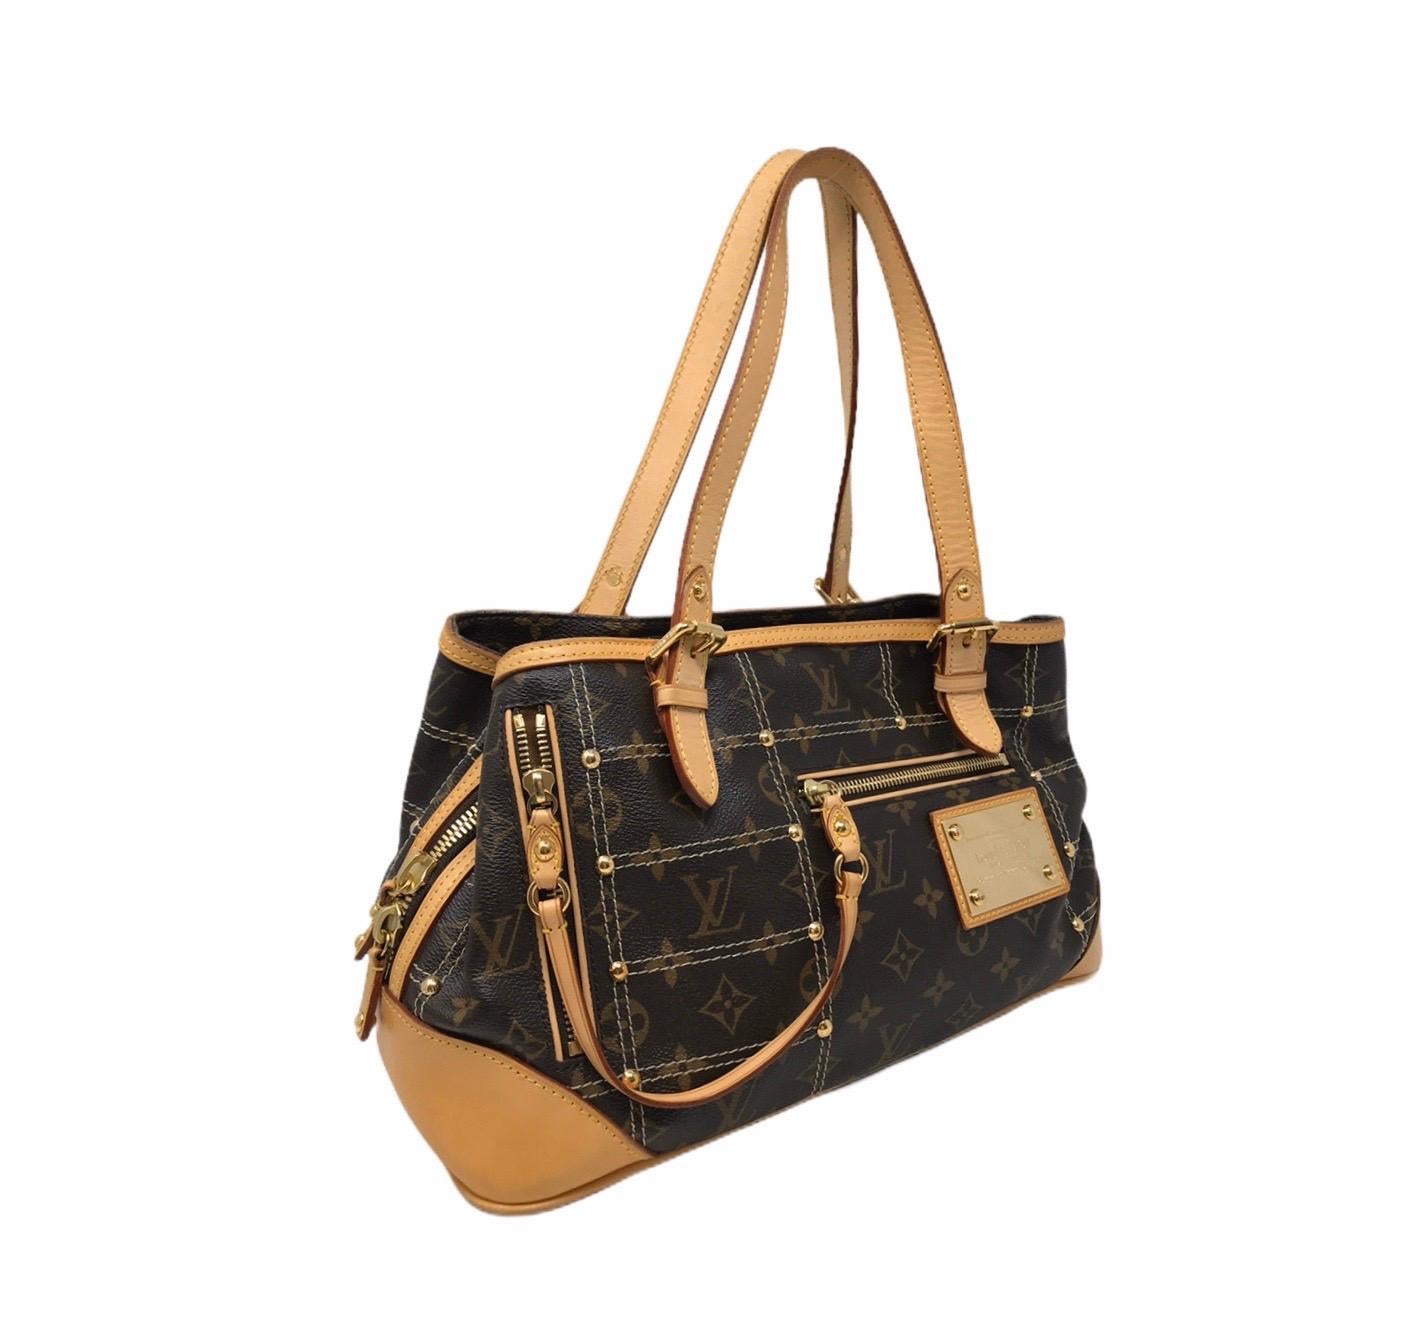 Louis Vuitton Damier Ebene Portobello Crossbody Bag at Jill's Consignment